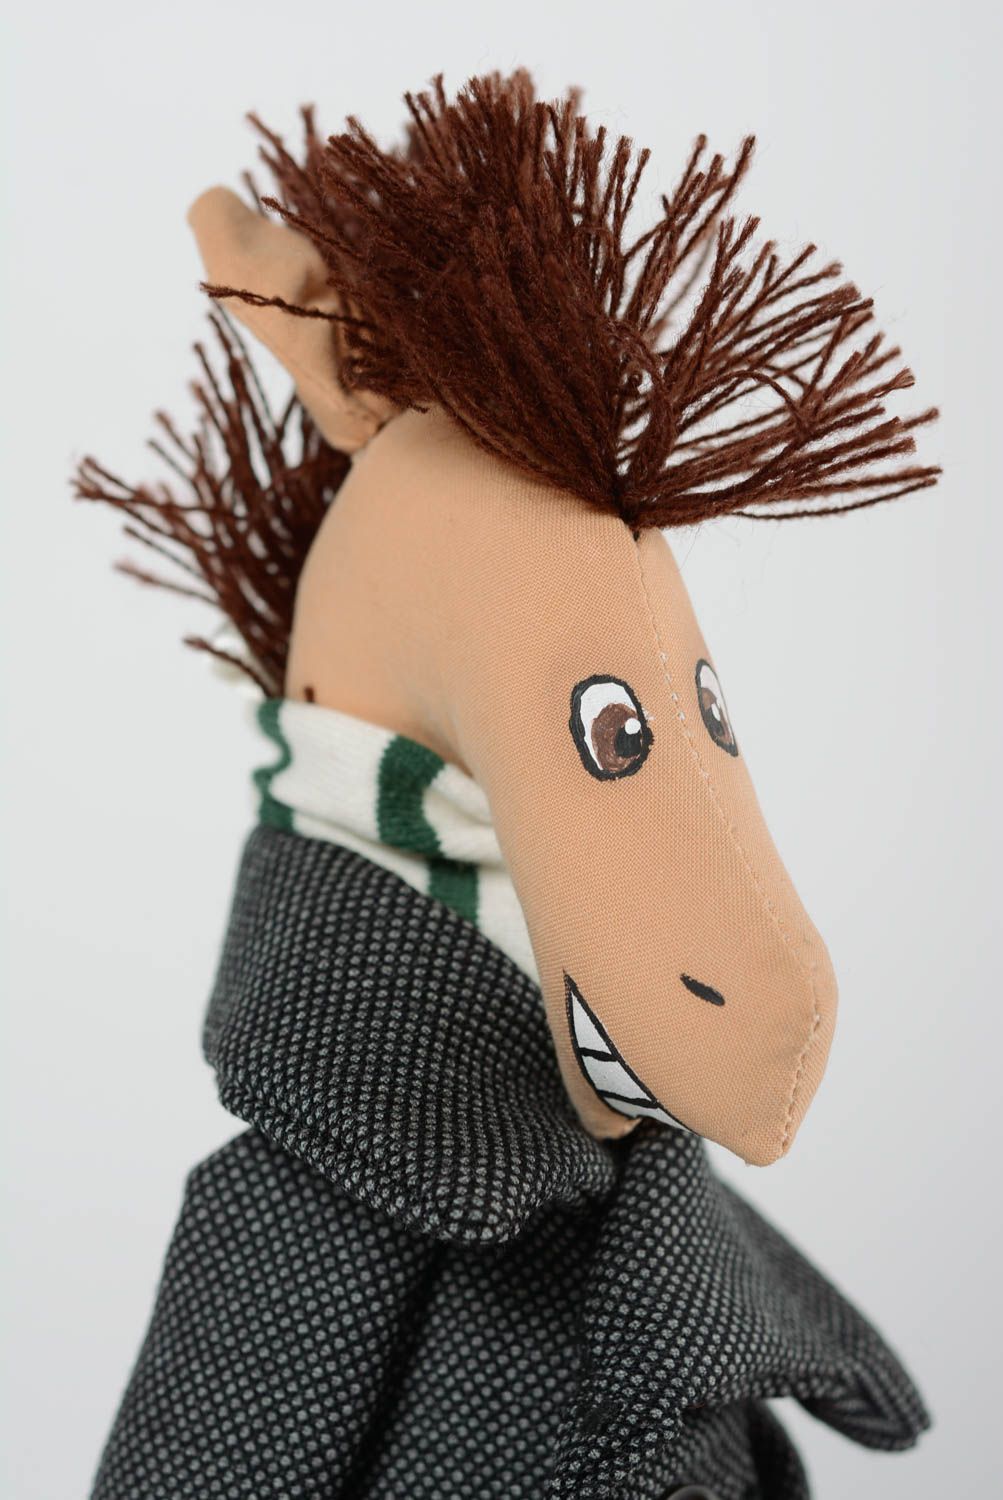 Мягкая оригинальная тканевая игрушка конь в пальто из хлопковой ткани хэнд мэйд фото 2